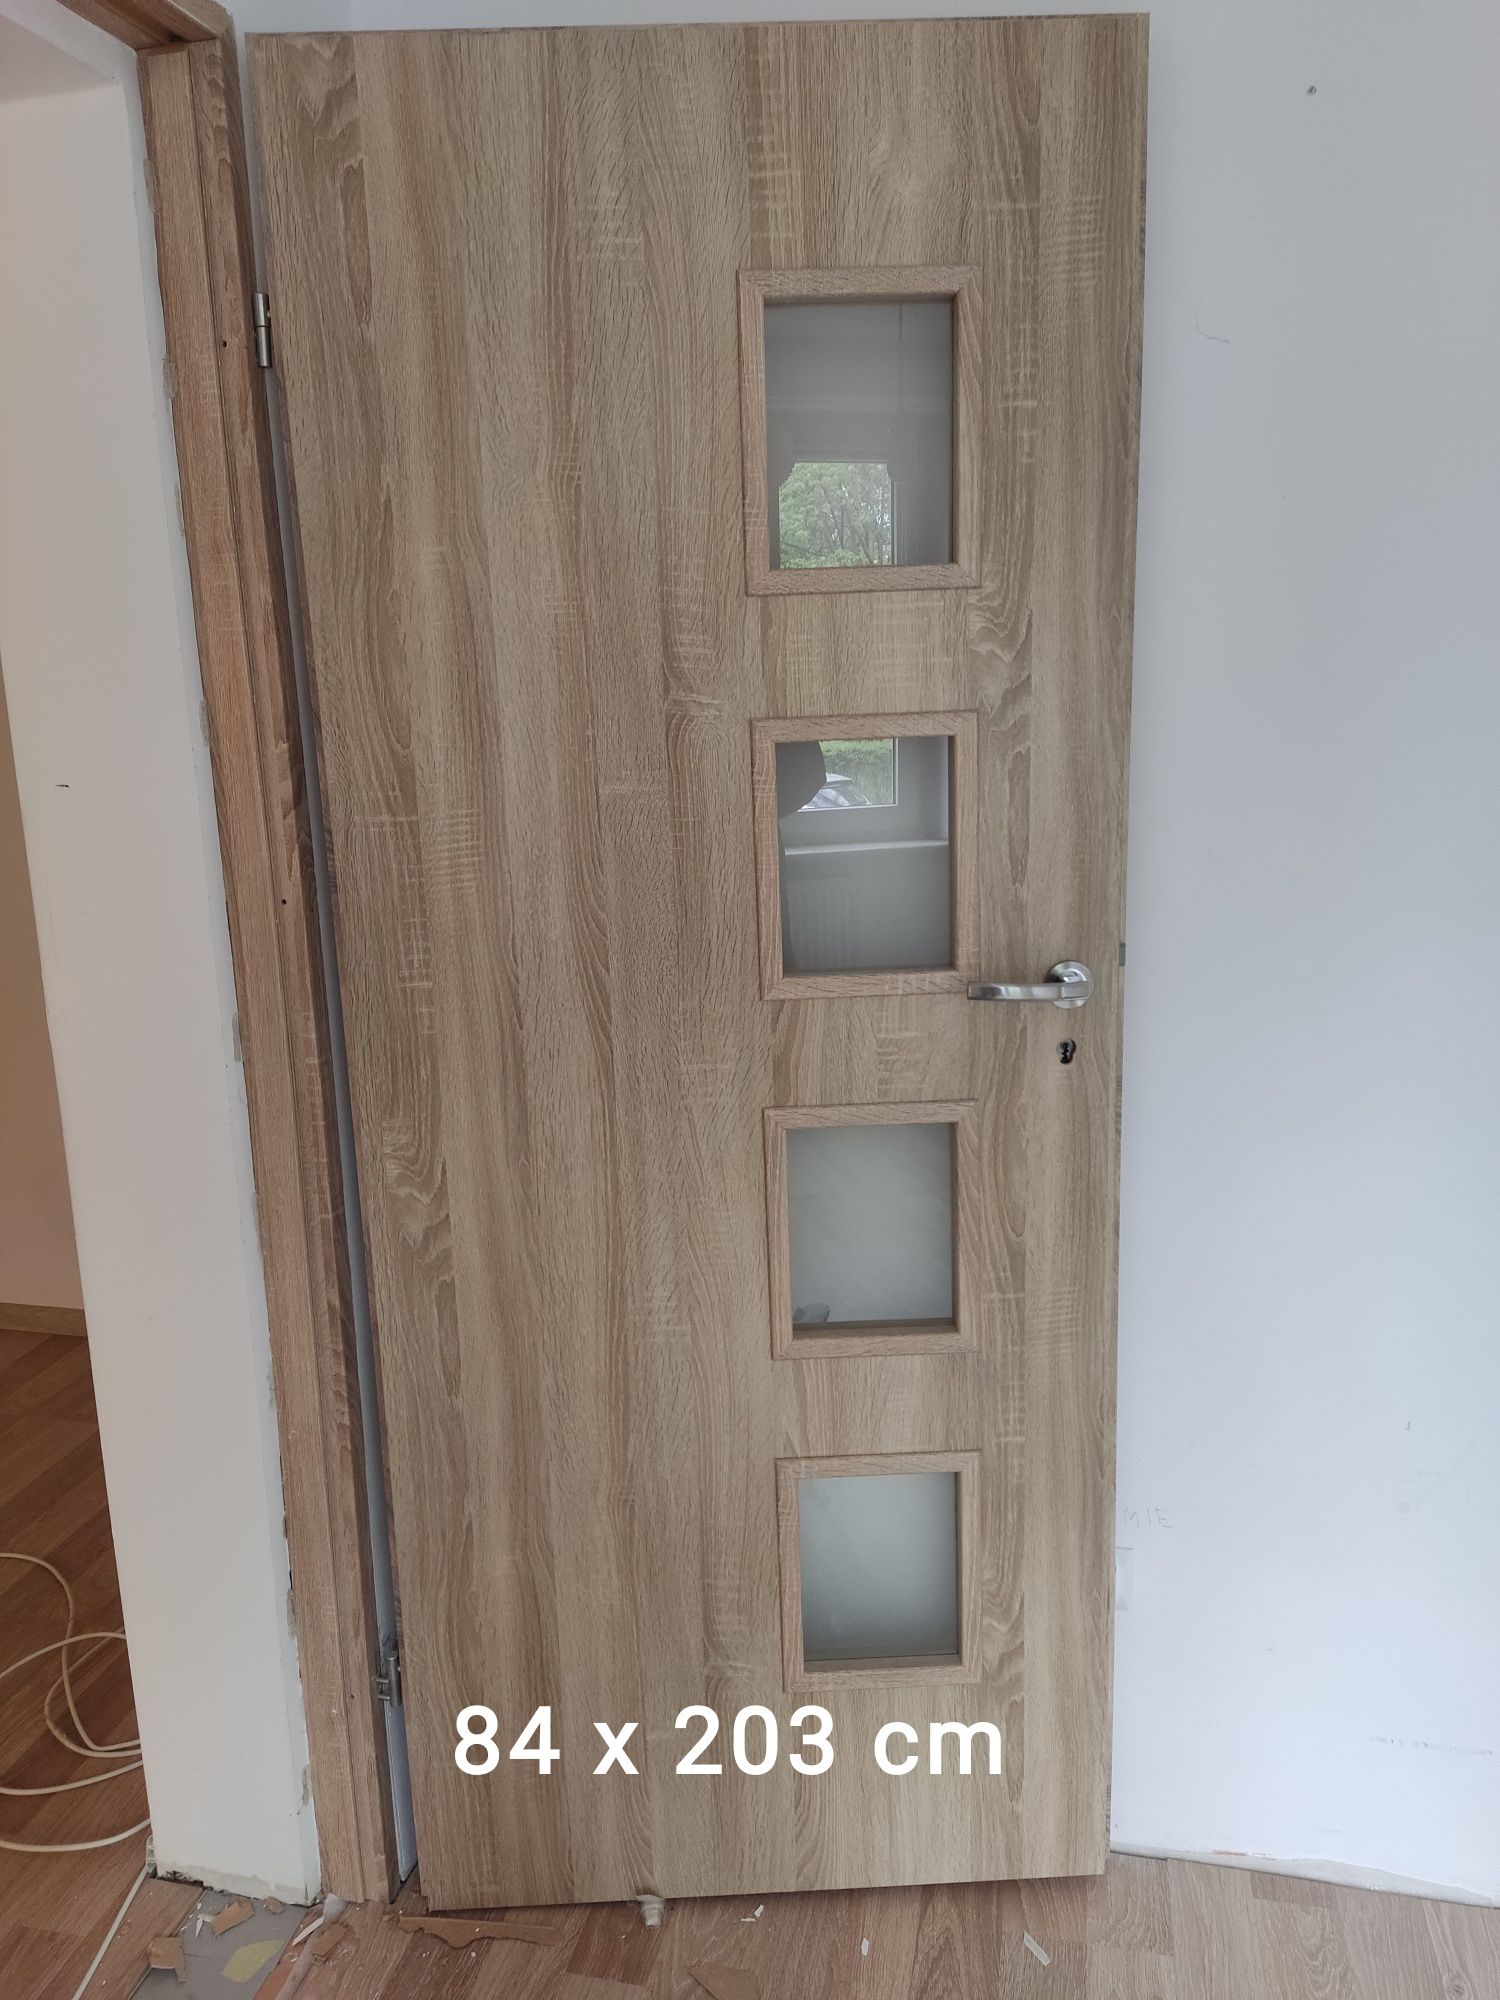 Drzwi wewnętrzne pokojowe 84x203 cm używane 2 sztuki prawe